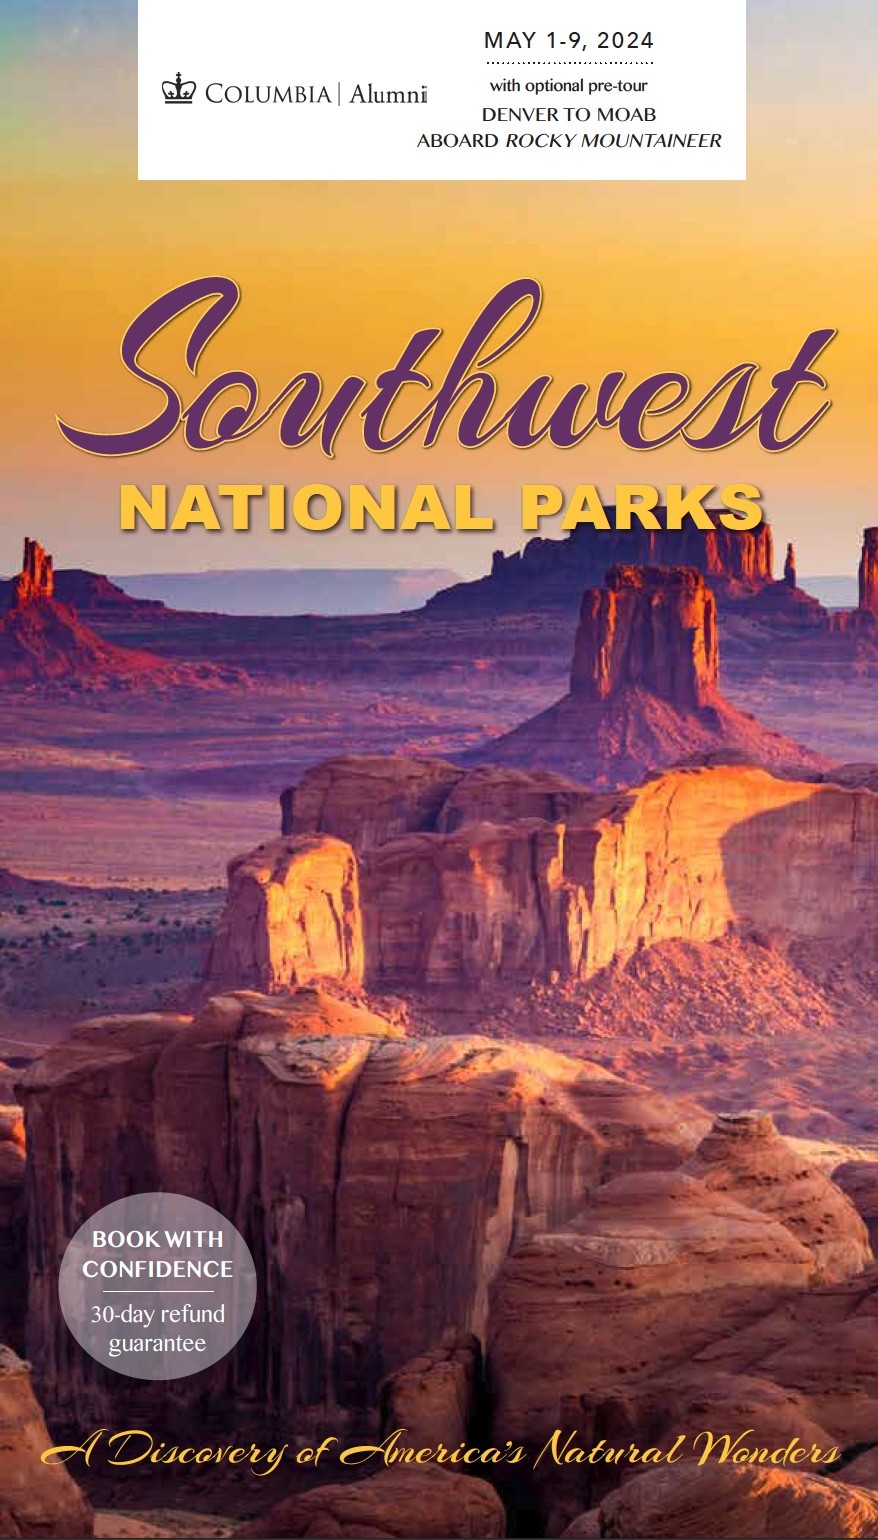 SW National Parks 2024 Program Brochure (PDF)